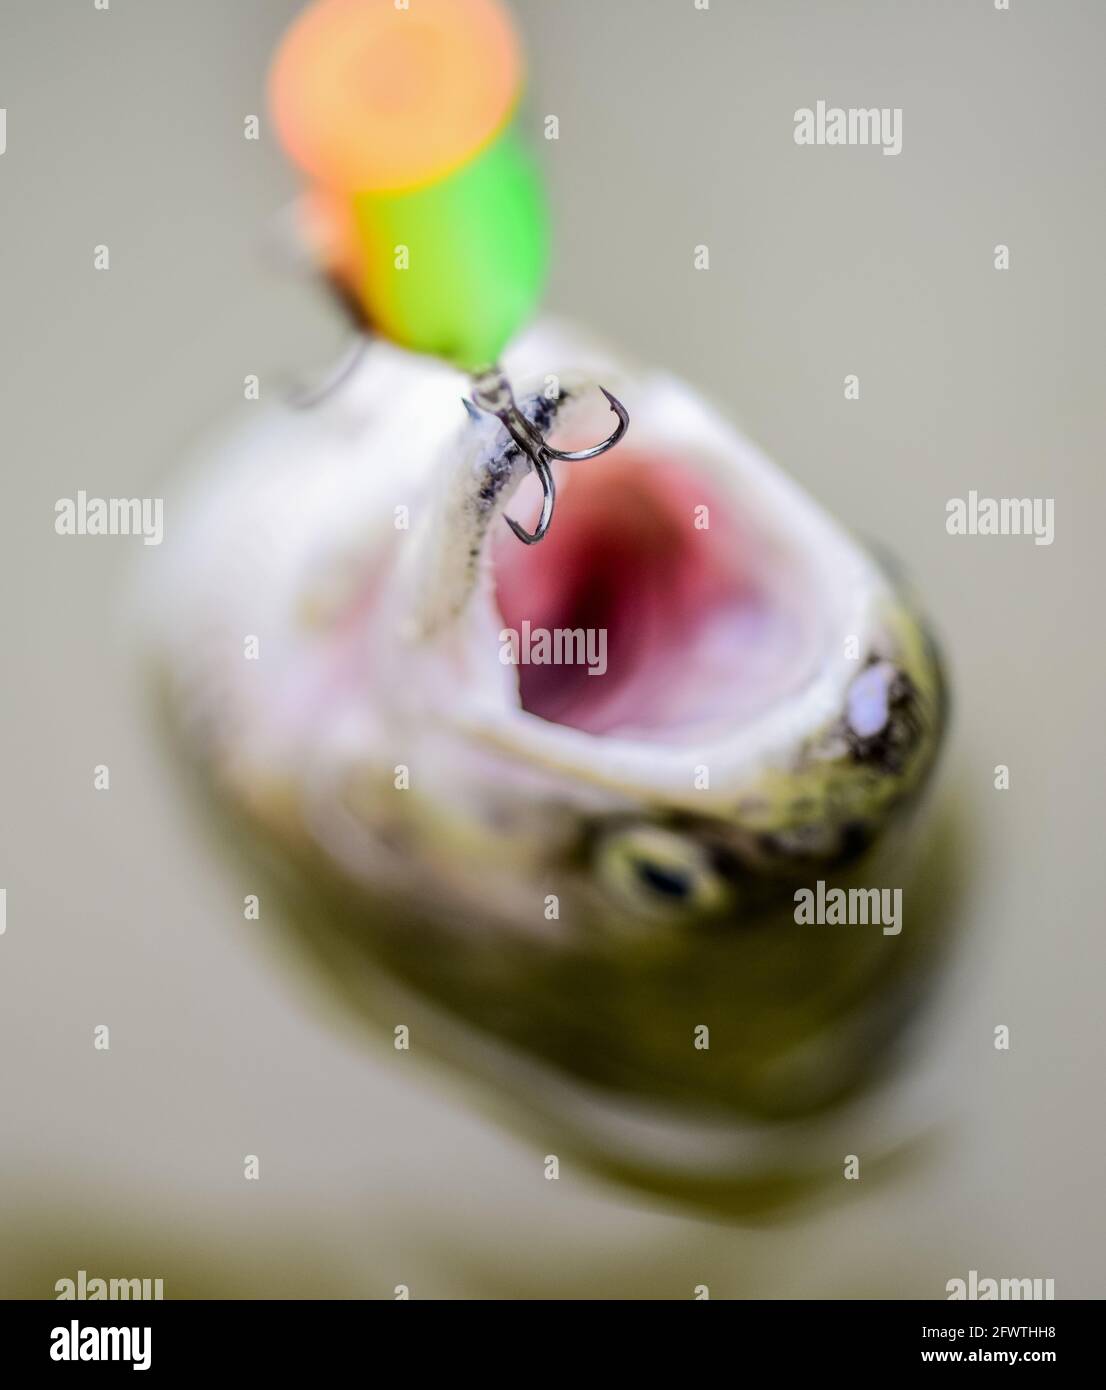 Aparejos de pesca profesional fotografías e imágenes de alta resolución -  Página 6 - Alamy